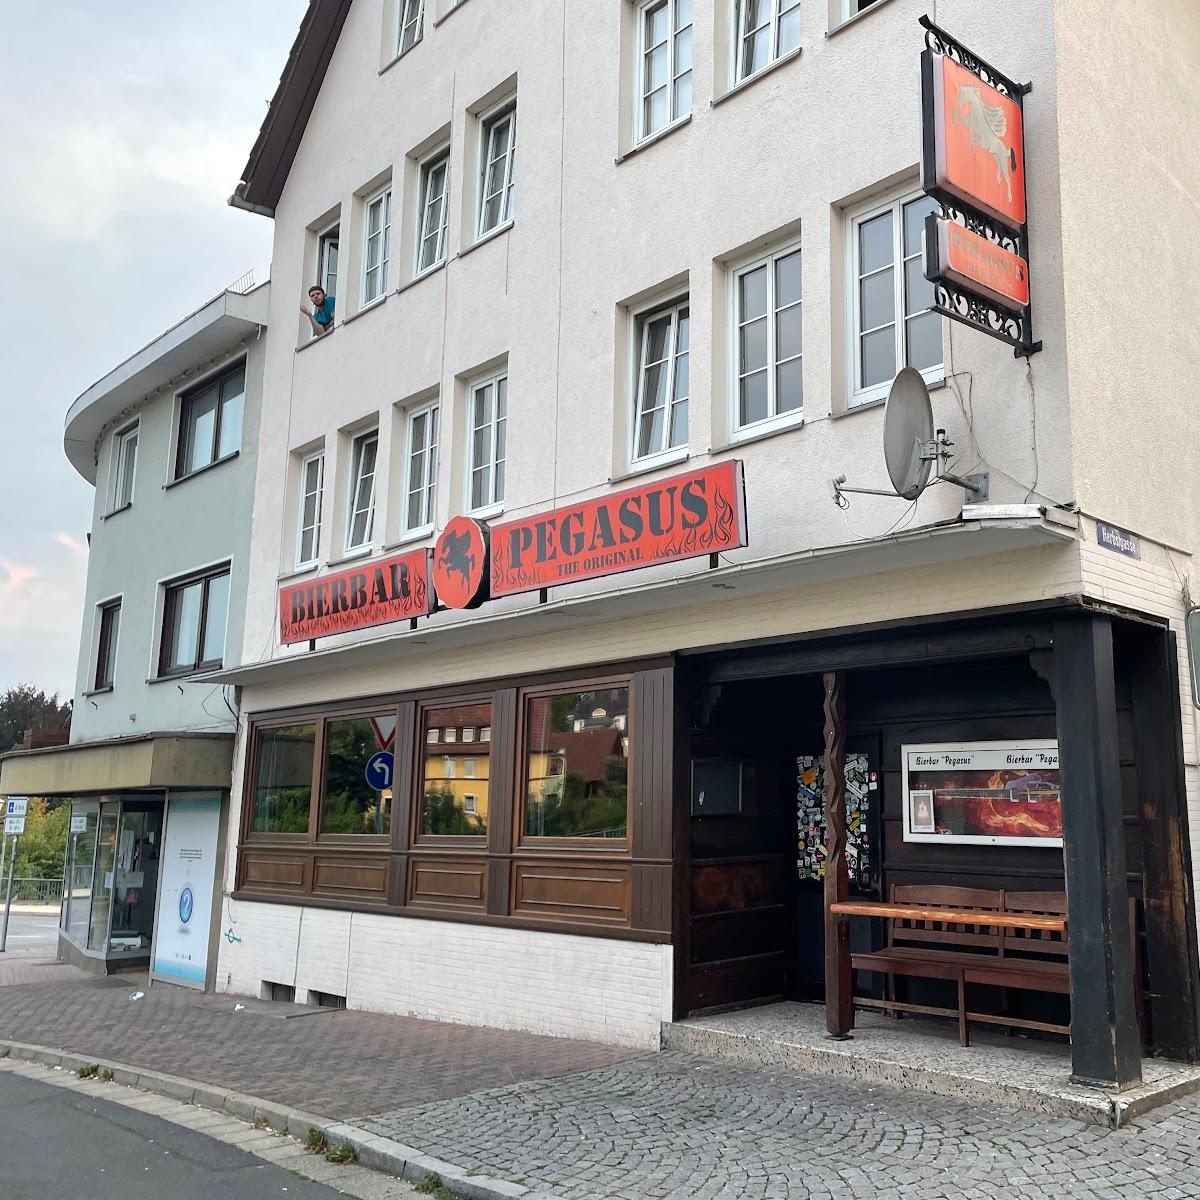 Restaurant "Pegasus" in Schwalmstadt